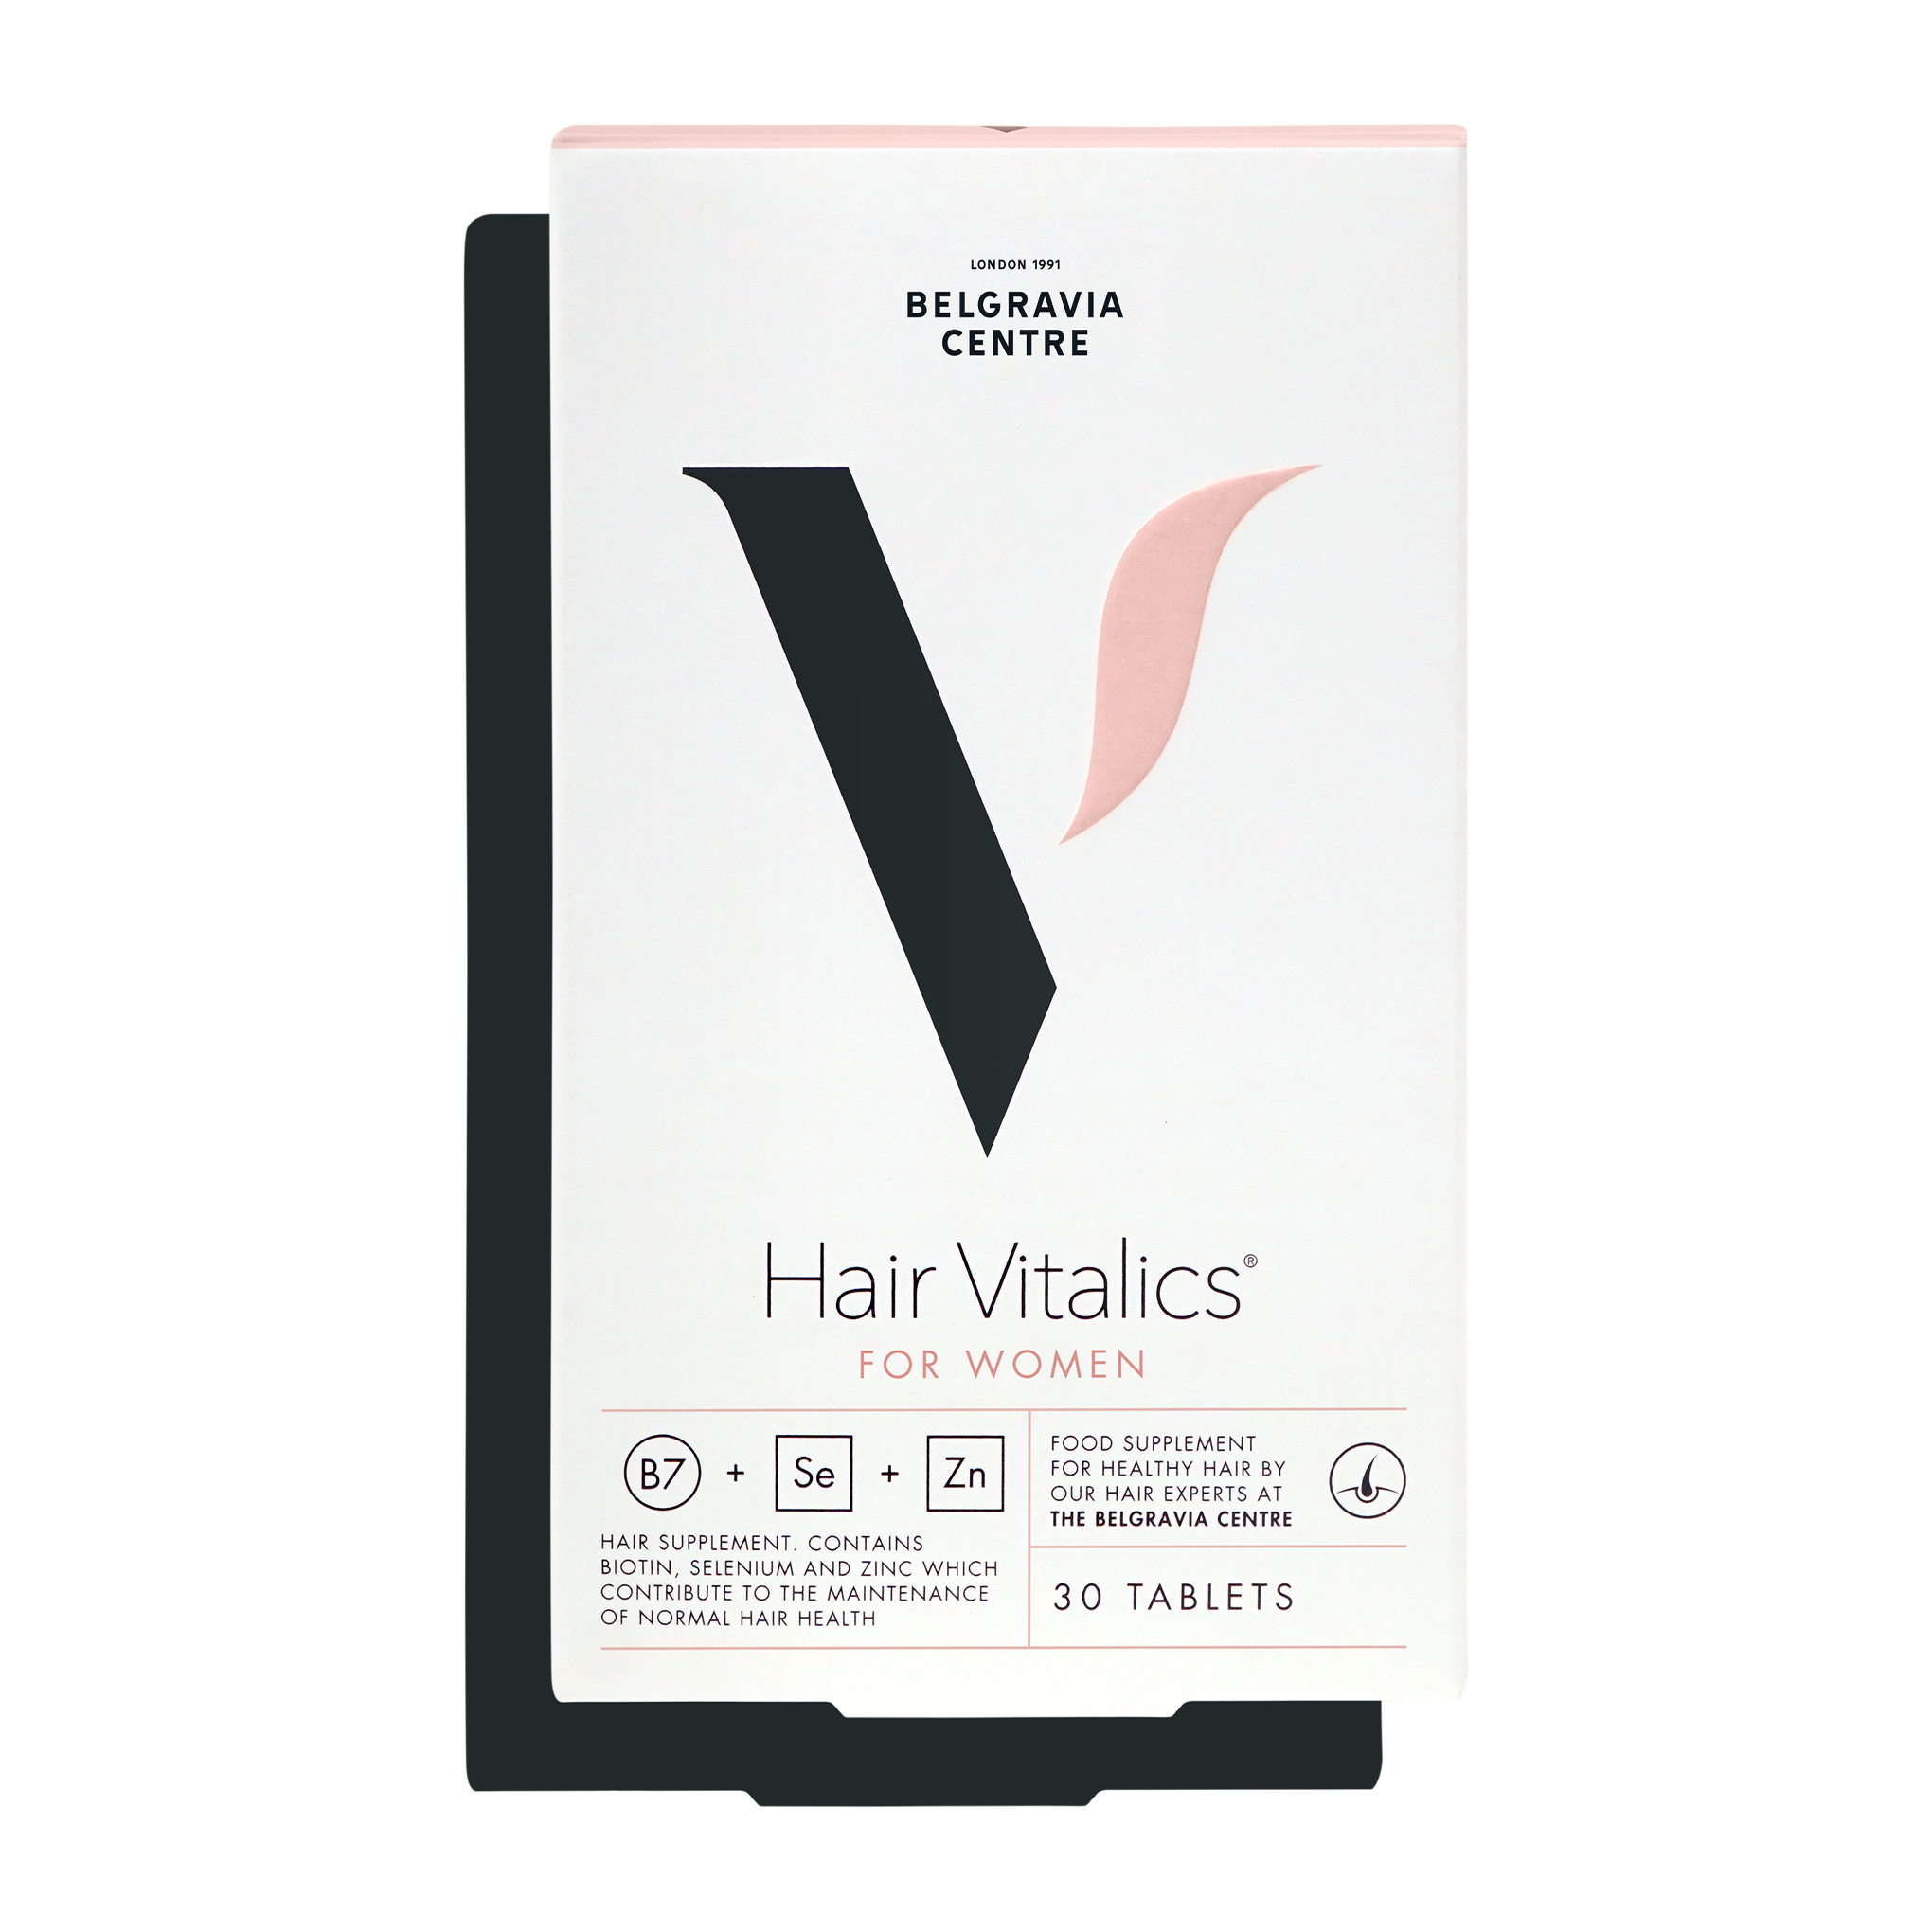 Hair Vitalics for Women